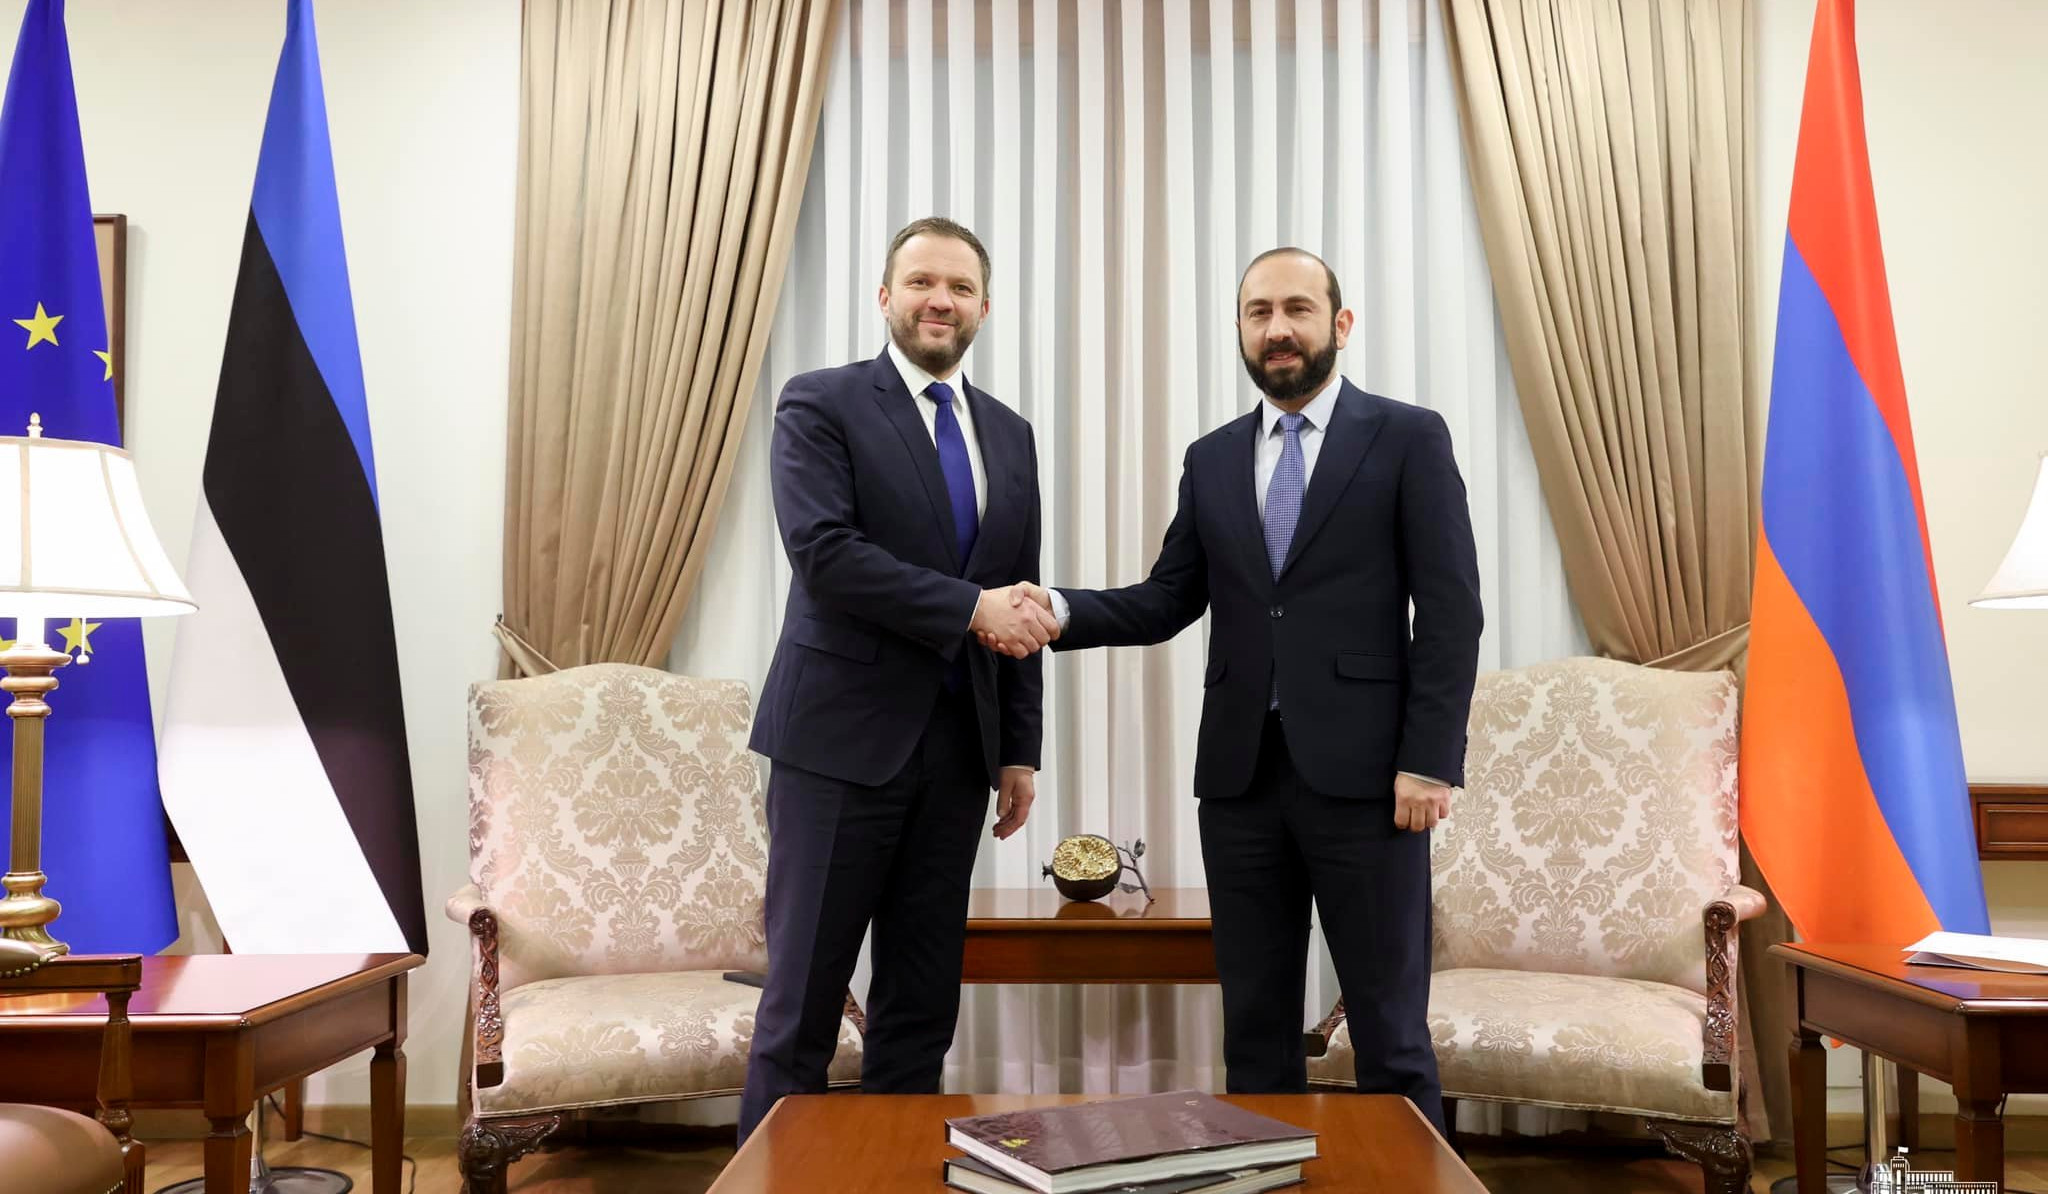 Մեկնարկել է Հայաստանի և Էստոնիայի արտաքին գործերի նախարարների առանձնազրույցը